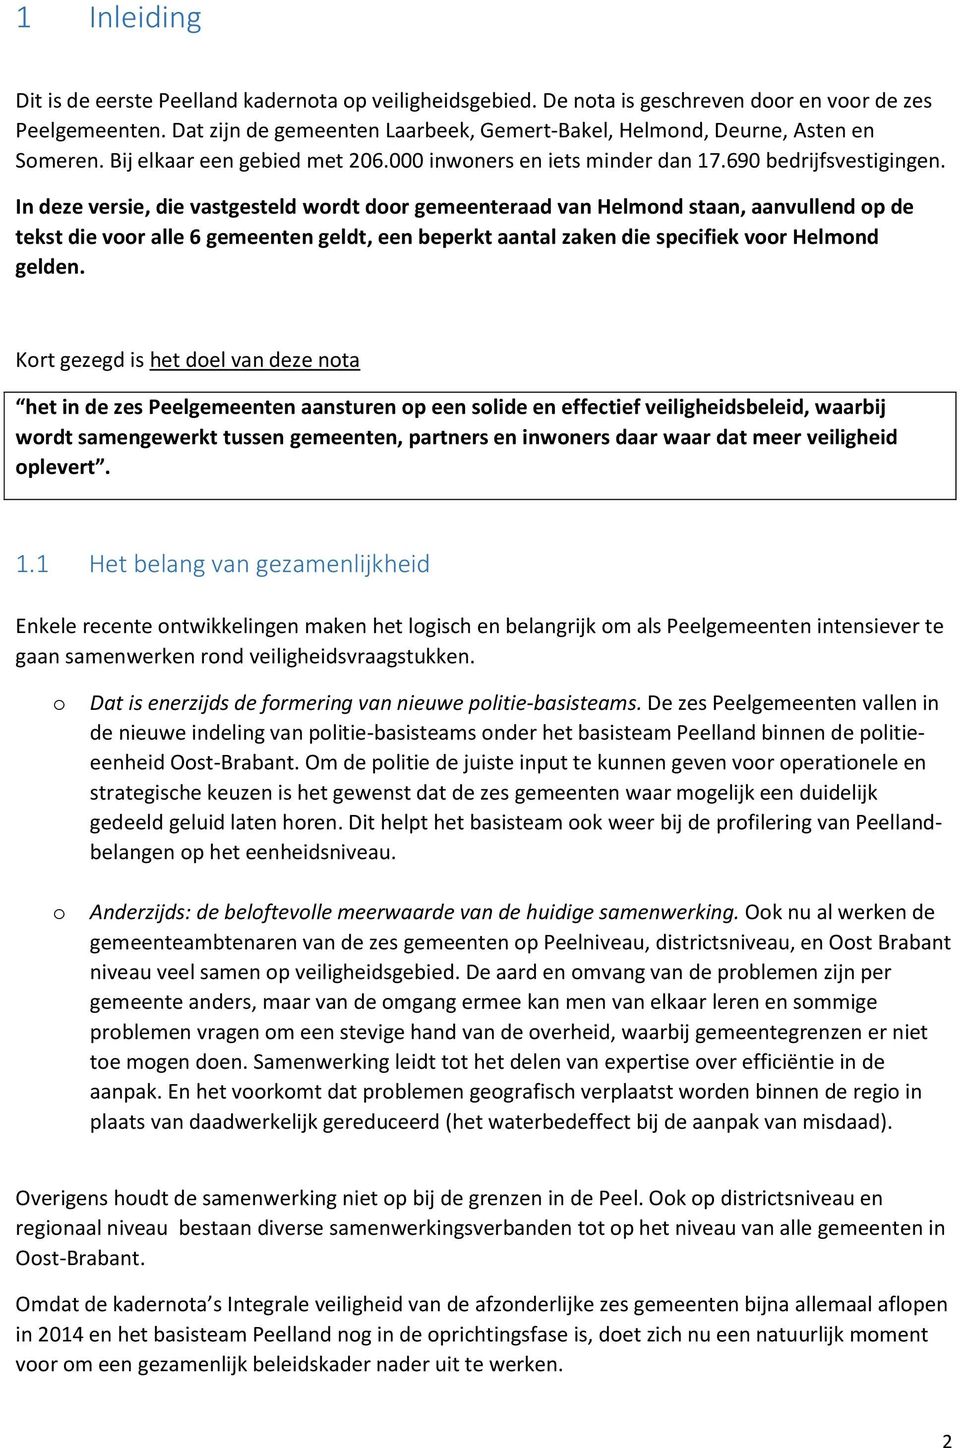 In deze versie, die vastgesteld wrdt dr gemeenteraad van Helmnd staan, aanvullend p de tekst die vr alle 6 gemeenten geldt, een beperkt aantal zaken die specifiek vr Helmnd gelden.